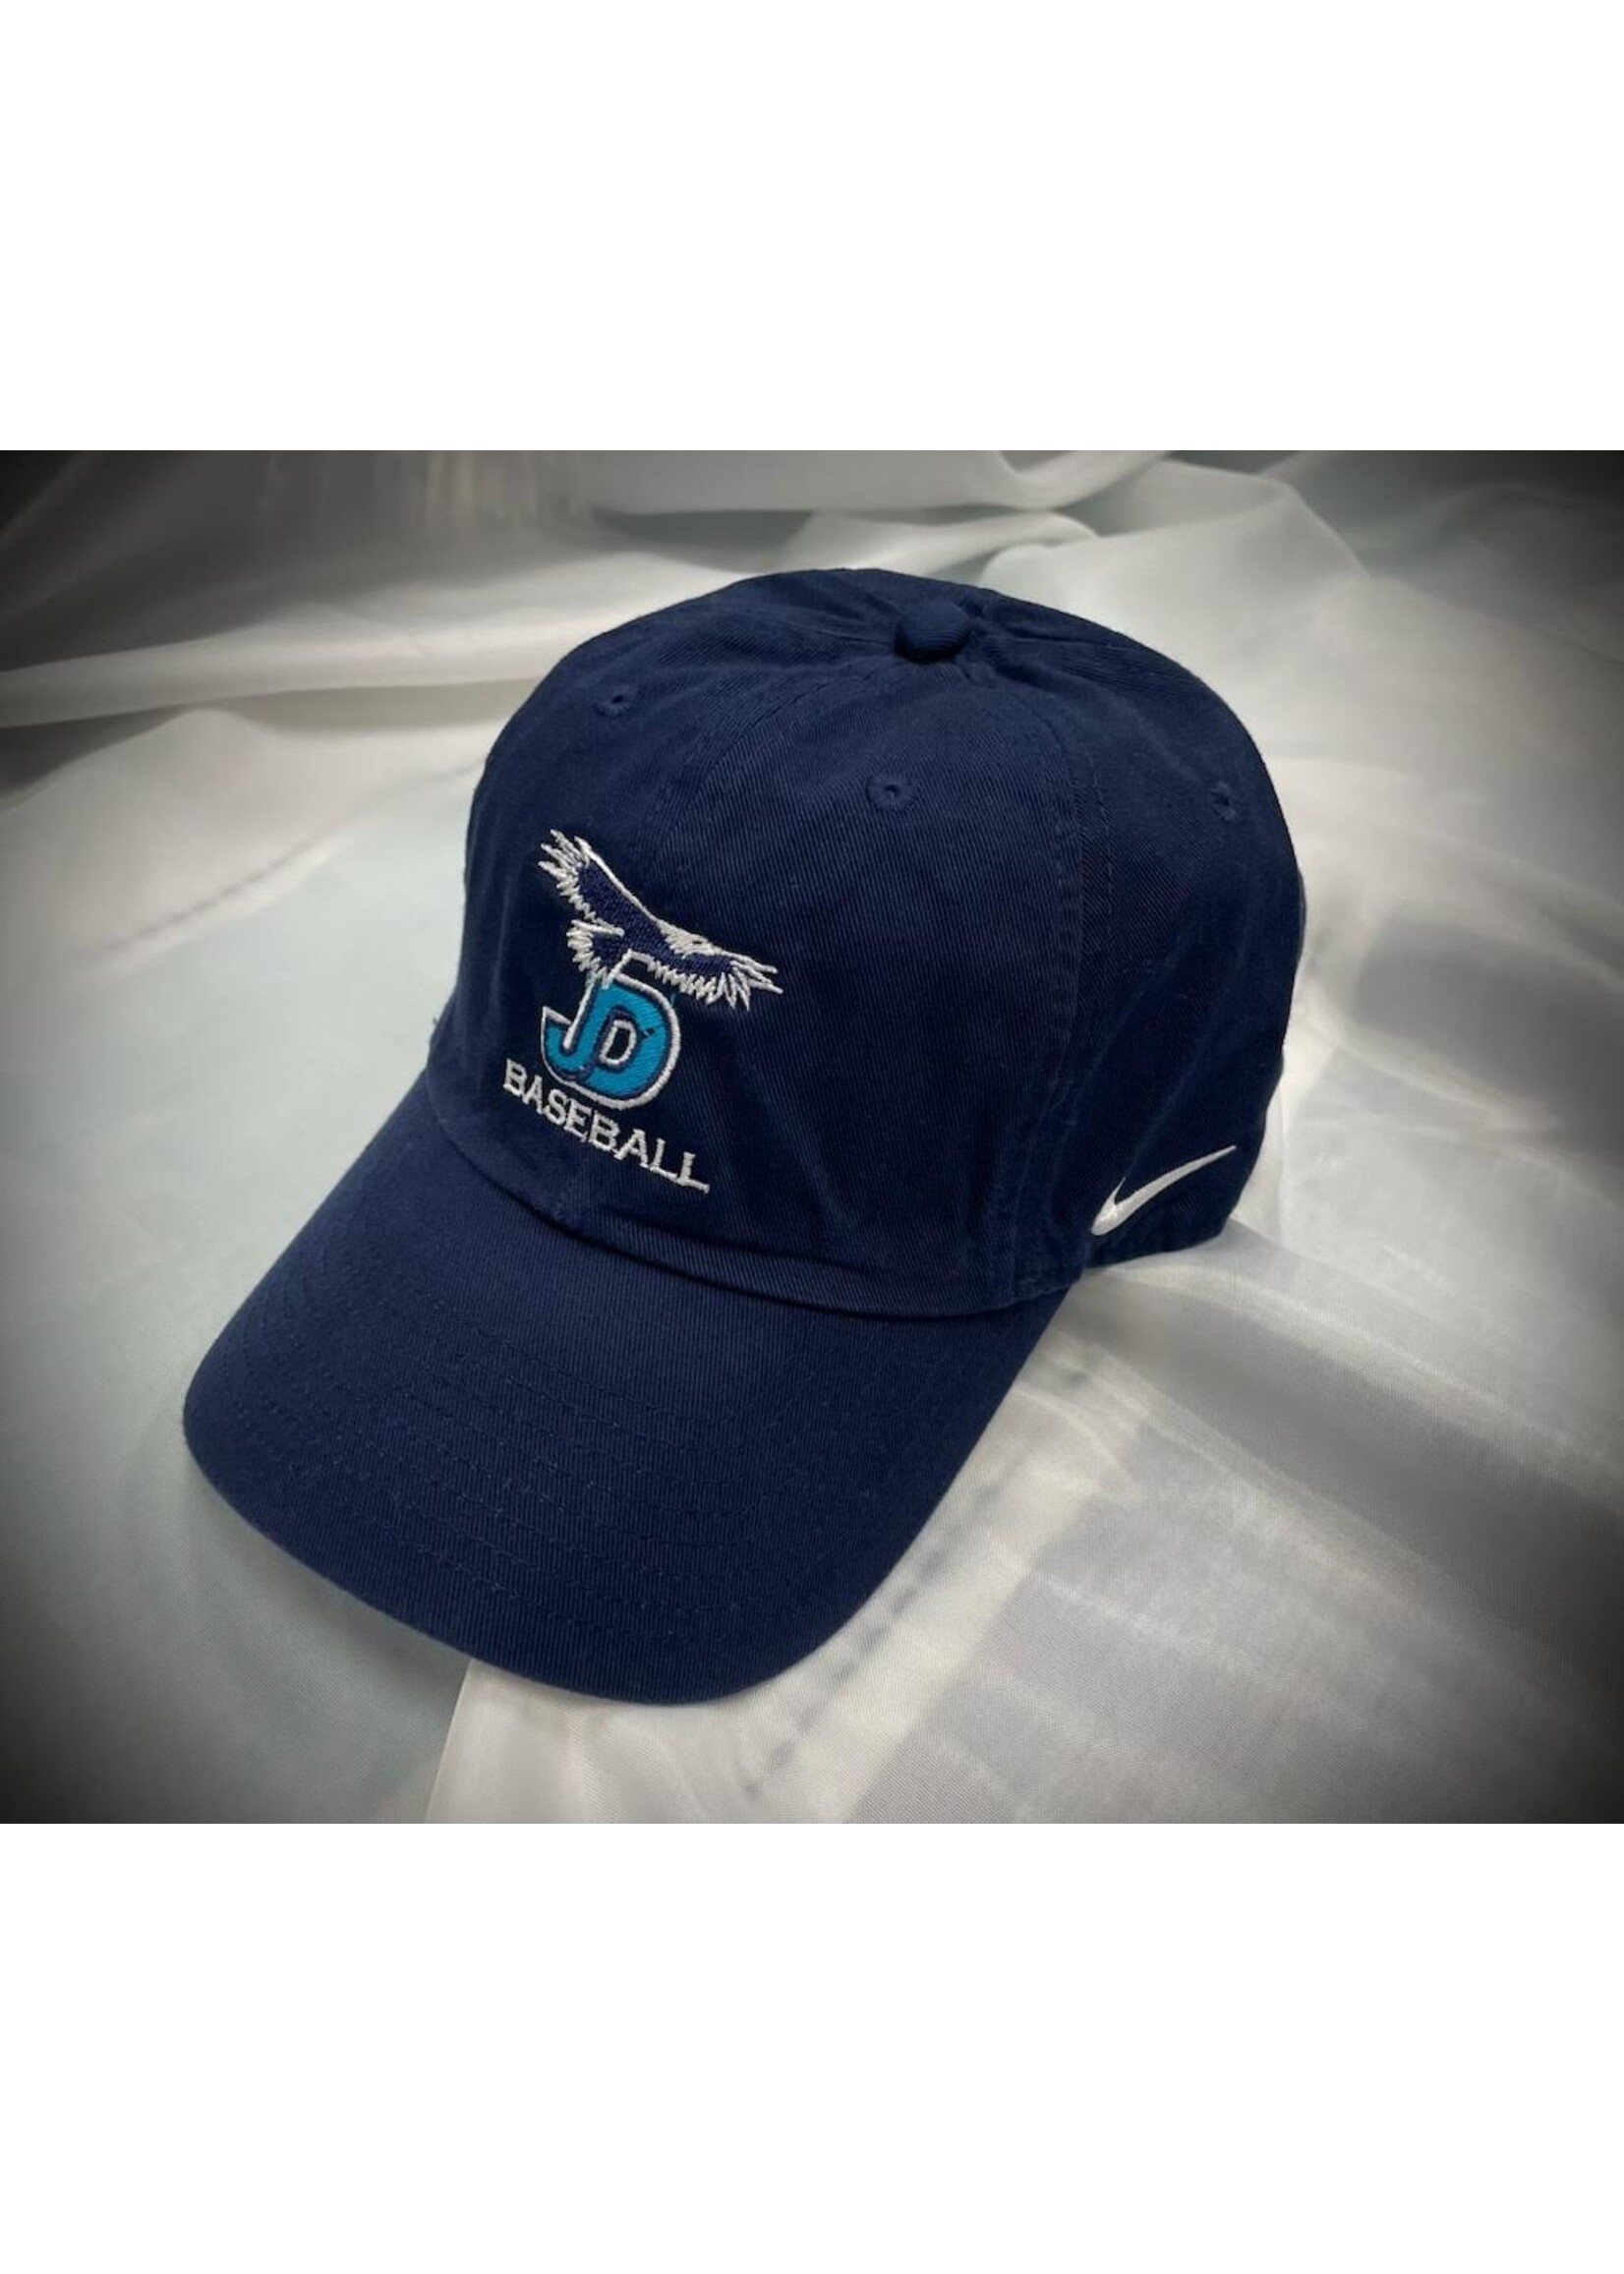 NON-UNIFORM Hat- Custom Nike Baseball Campus Cap, Men’s/Unisex